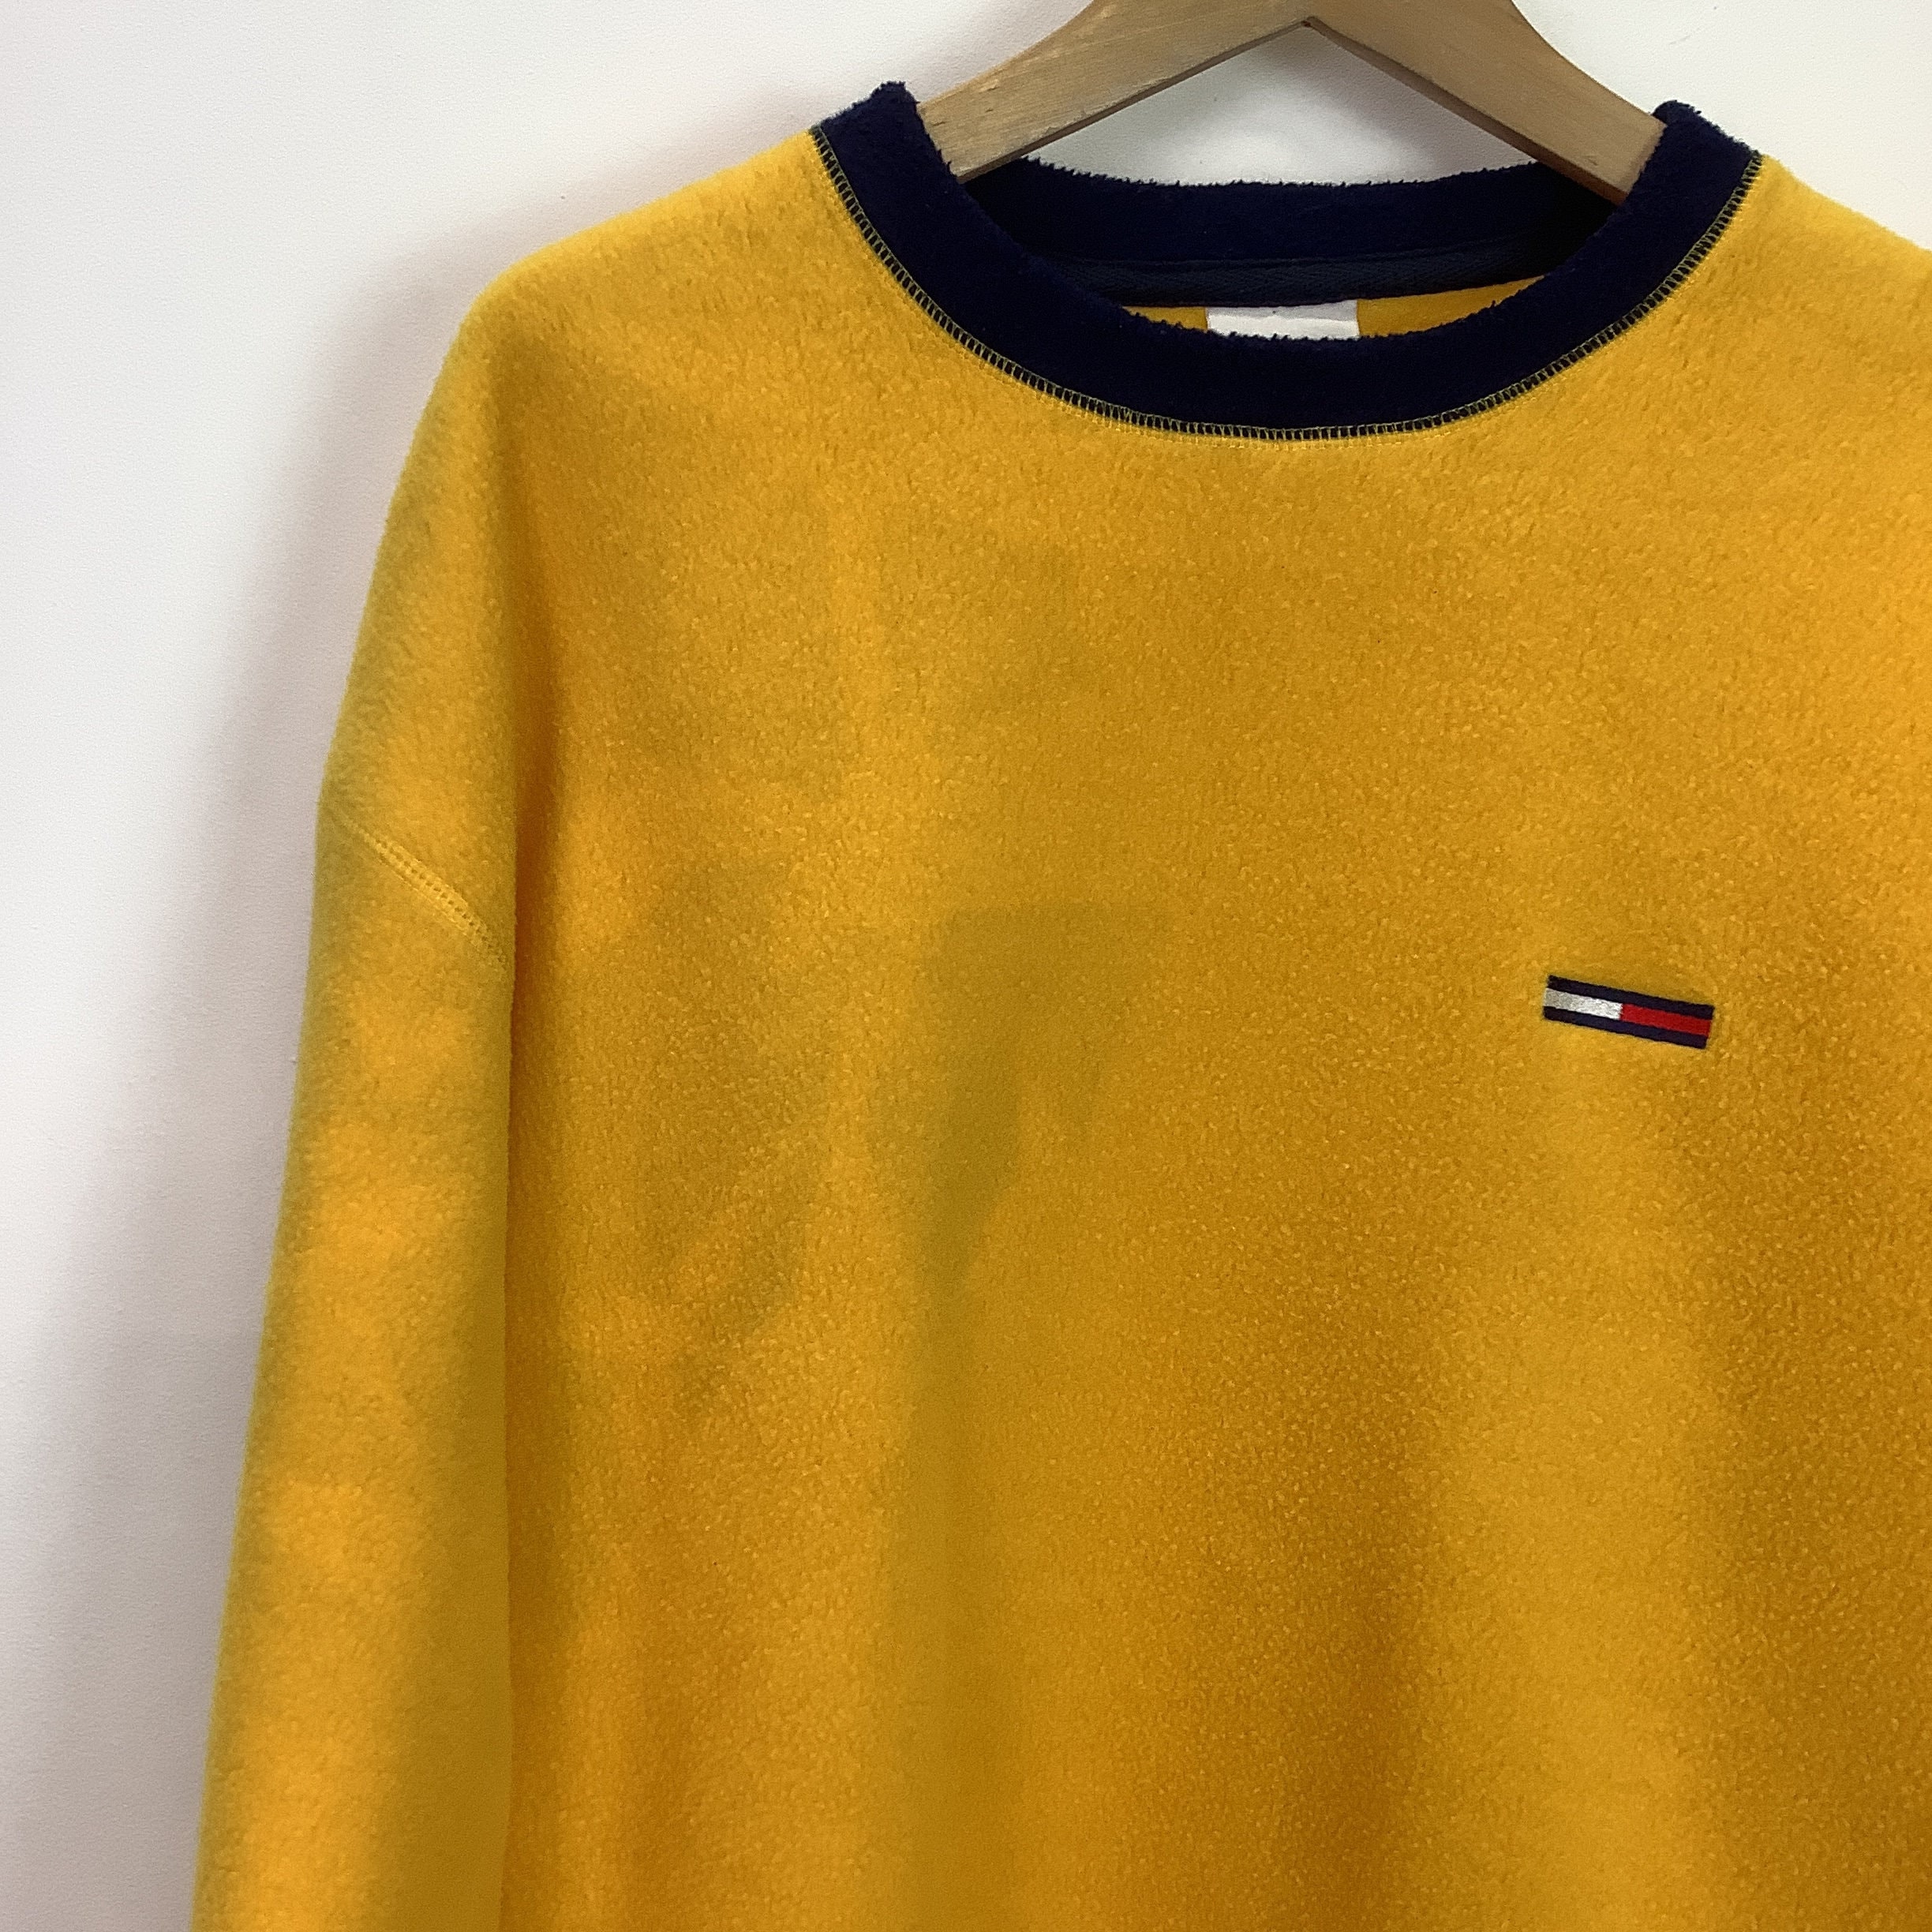 Ikke vigtigt Konfrontere Matematisk Tommy Hilfiger Yellow Fleece Sweater - Etsy